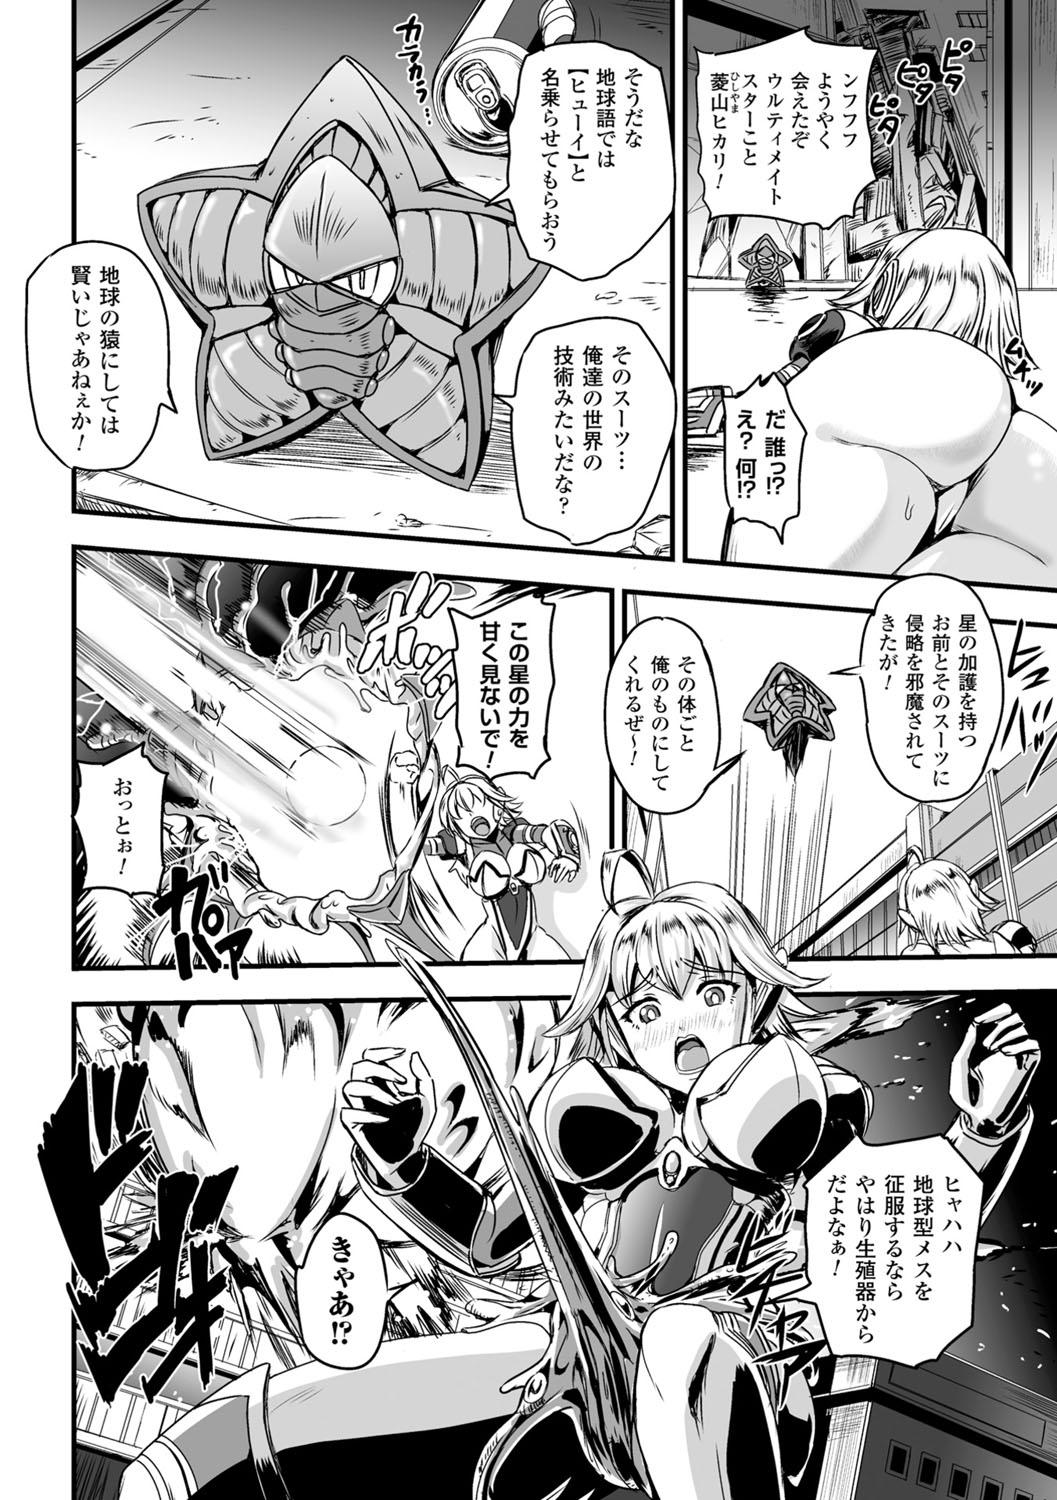 Art Megami Kansawa Masterbate - Page 6